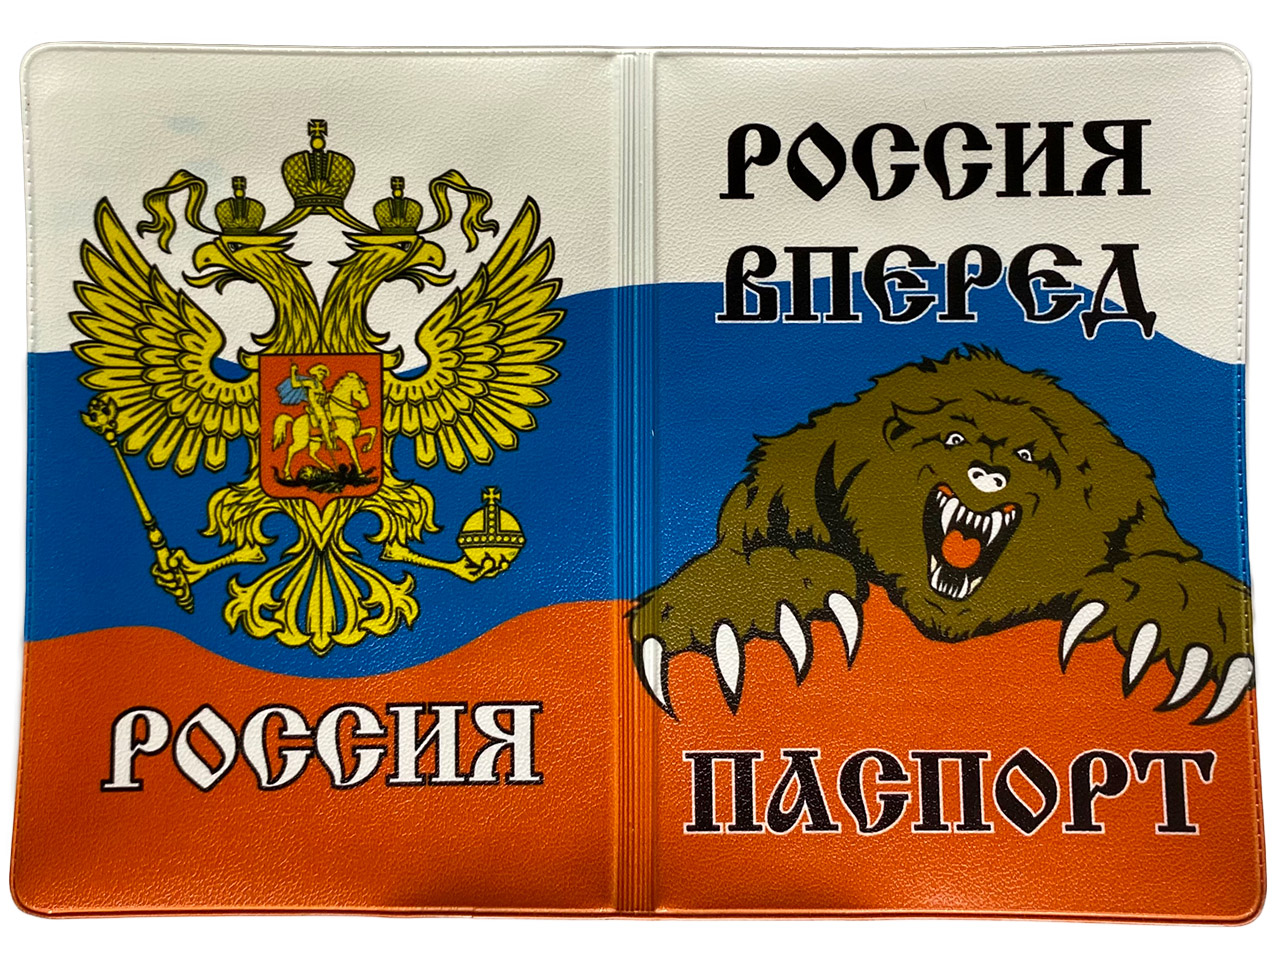 Купить обложку на паспорт «Россия Вперед» можно в магазине Военторг